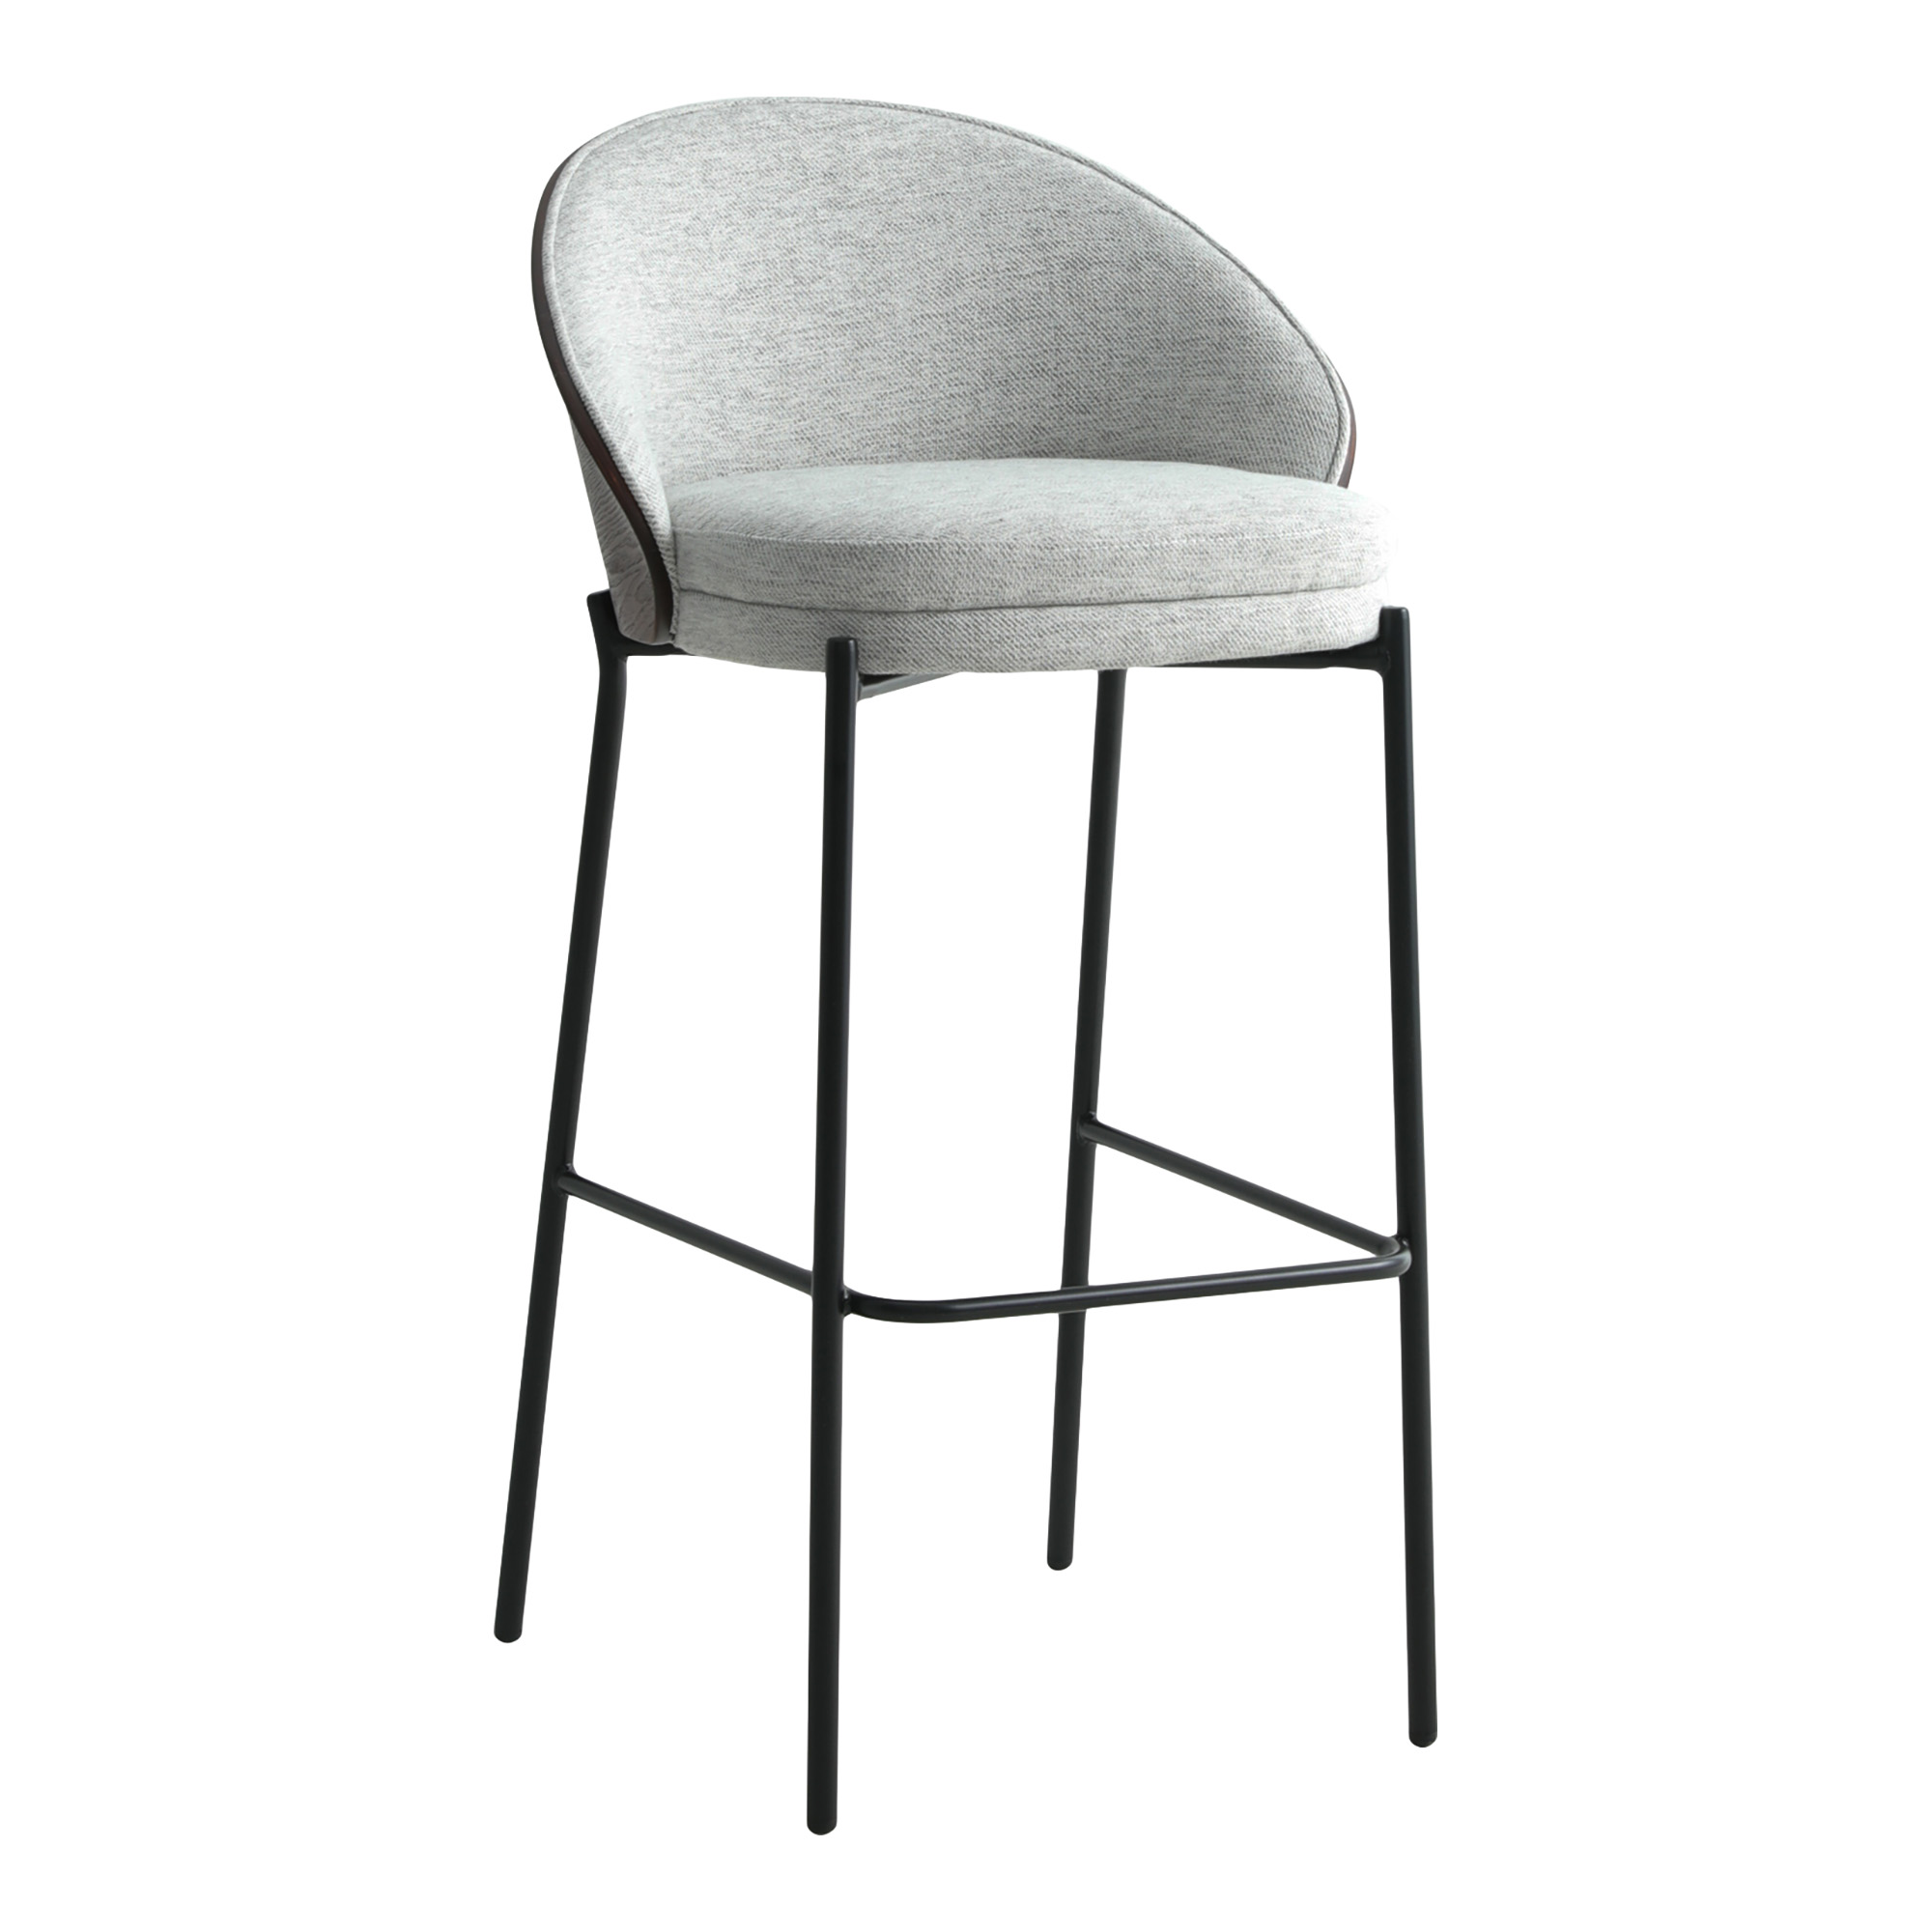 HOUSE NORDIC Canelas barstol, m. ryglæn og fodstøtte - lysegrå stof, mørkebrun MDF og sort stål